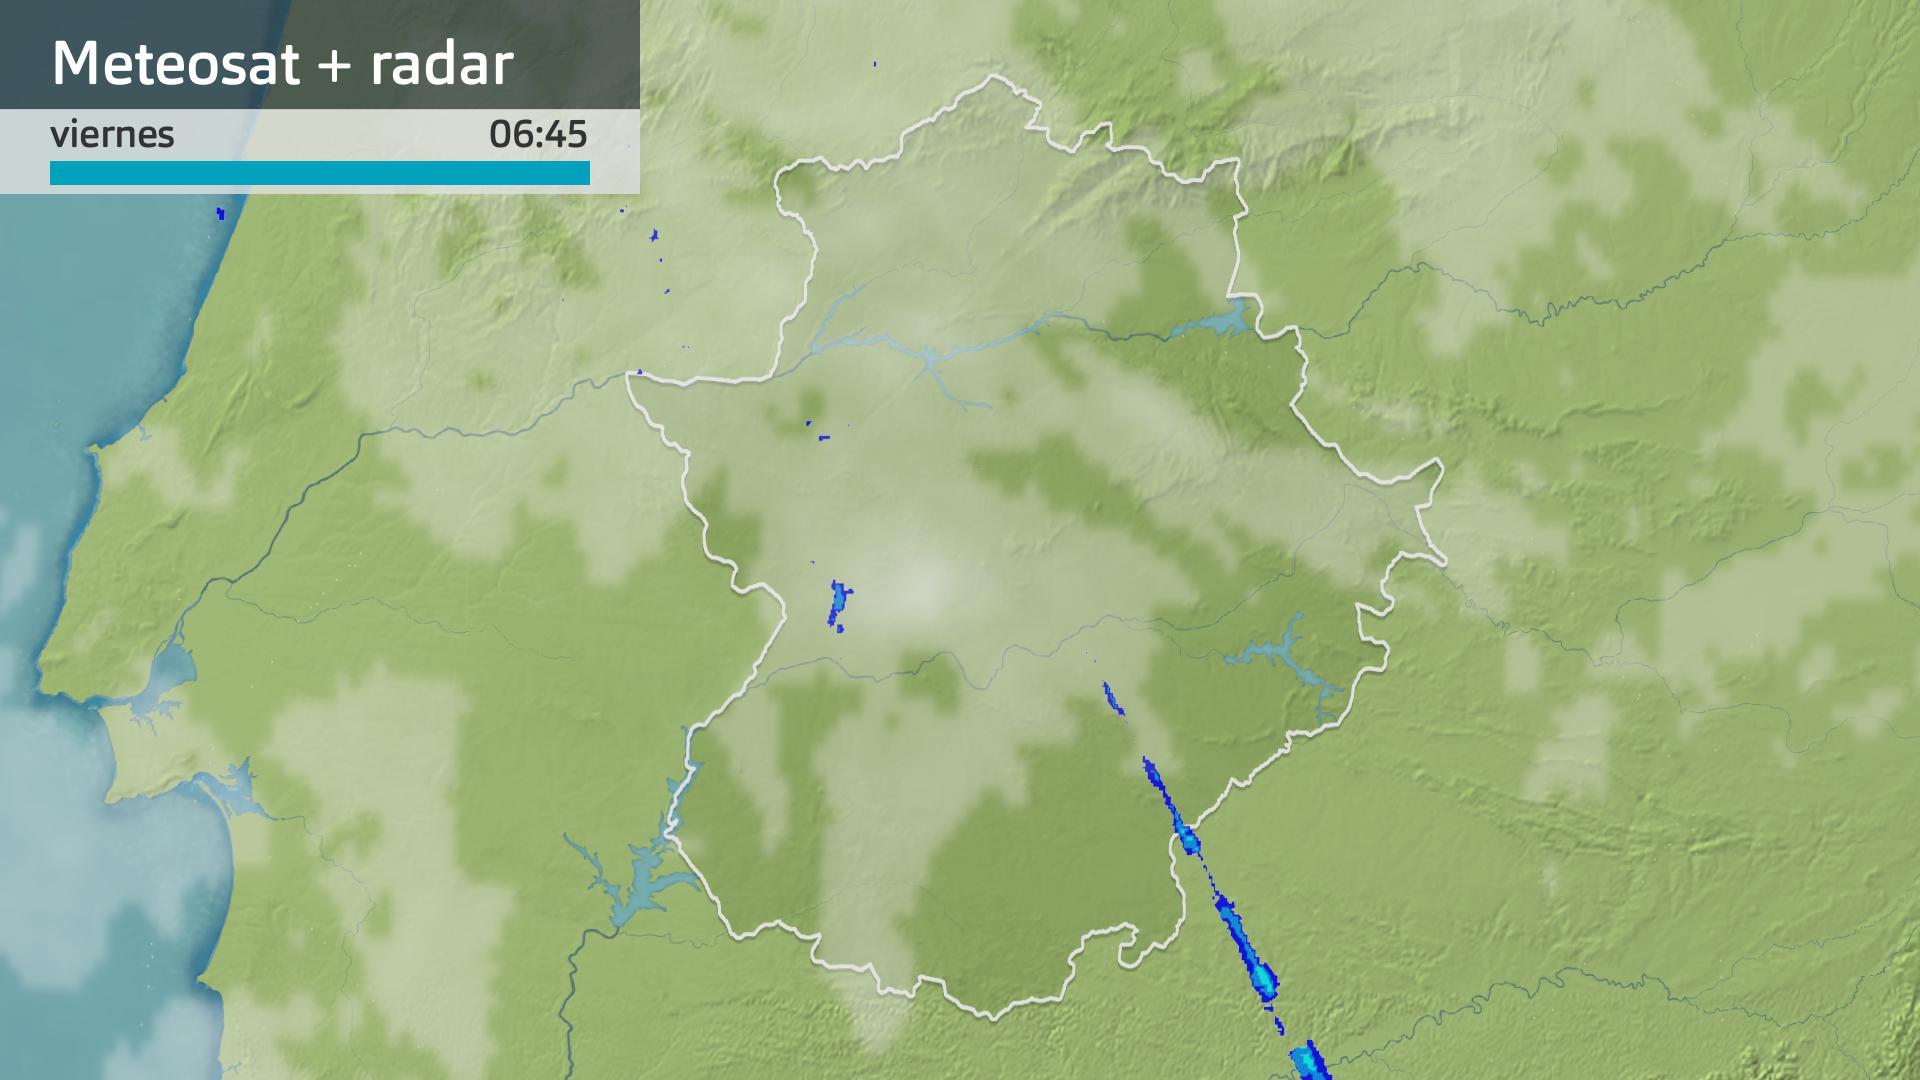 Imagen del Meteosat + radar meteorológico viernes 15 de marzo 6:45 h.